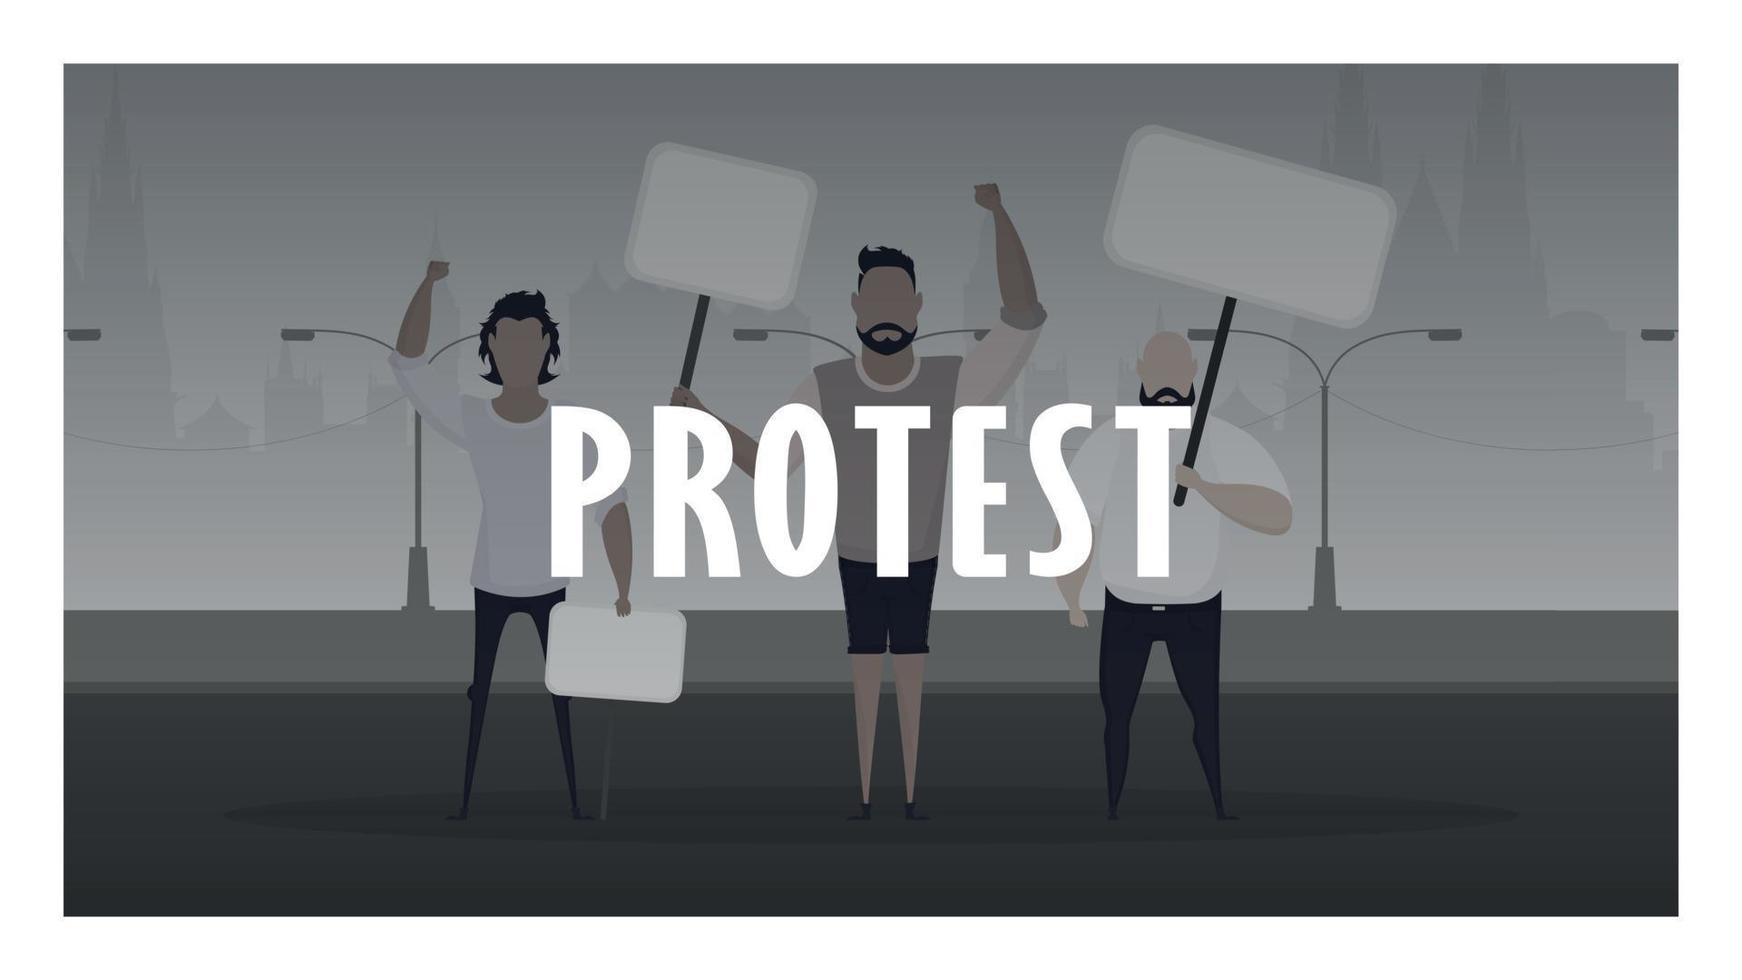 banderole de protestation. une foule de gars avec des banderoles à la main est sortie pour protester. style prosky. illustration vectorielle. vecteur